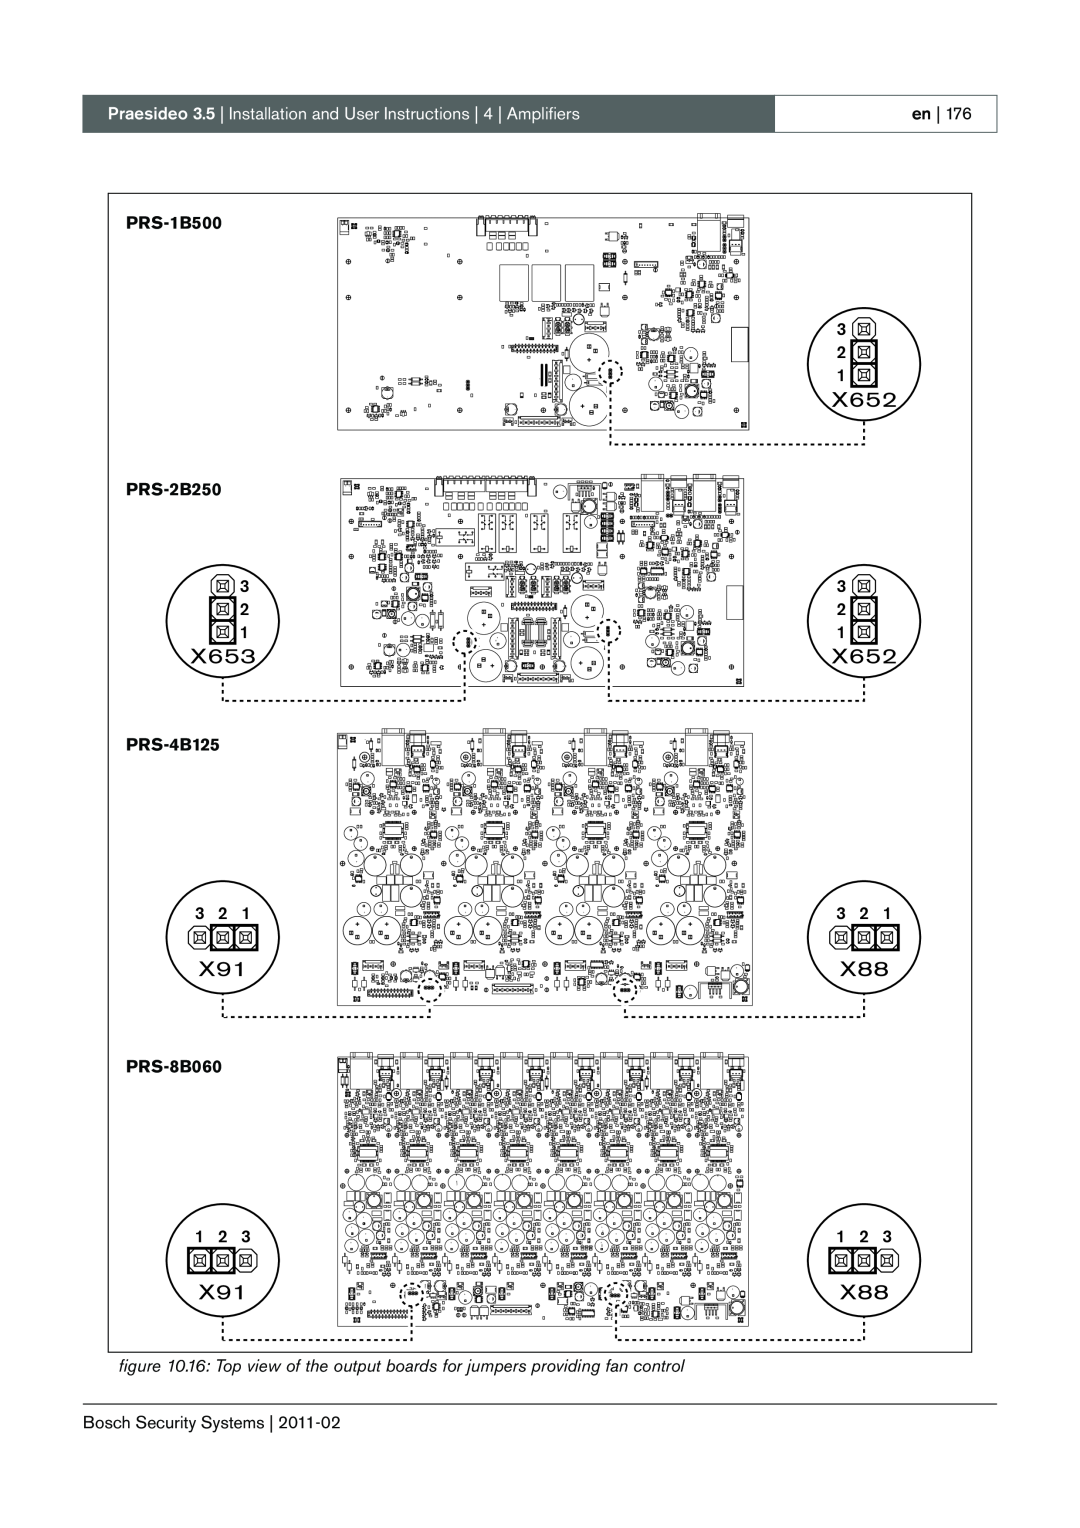 Bosch Appliances 3.5 manual X652, X653, PRS-1B500, PRS-2B250, PRS-4B125, PRS-8B060 